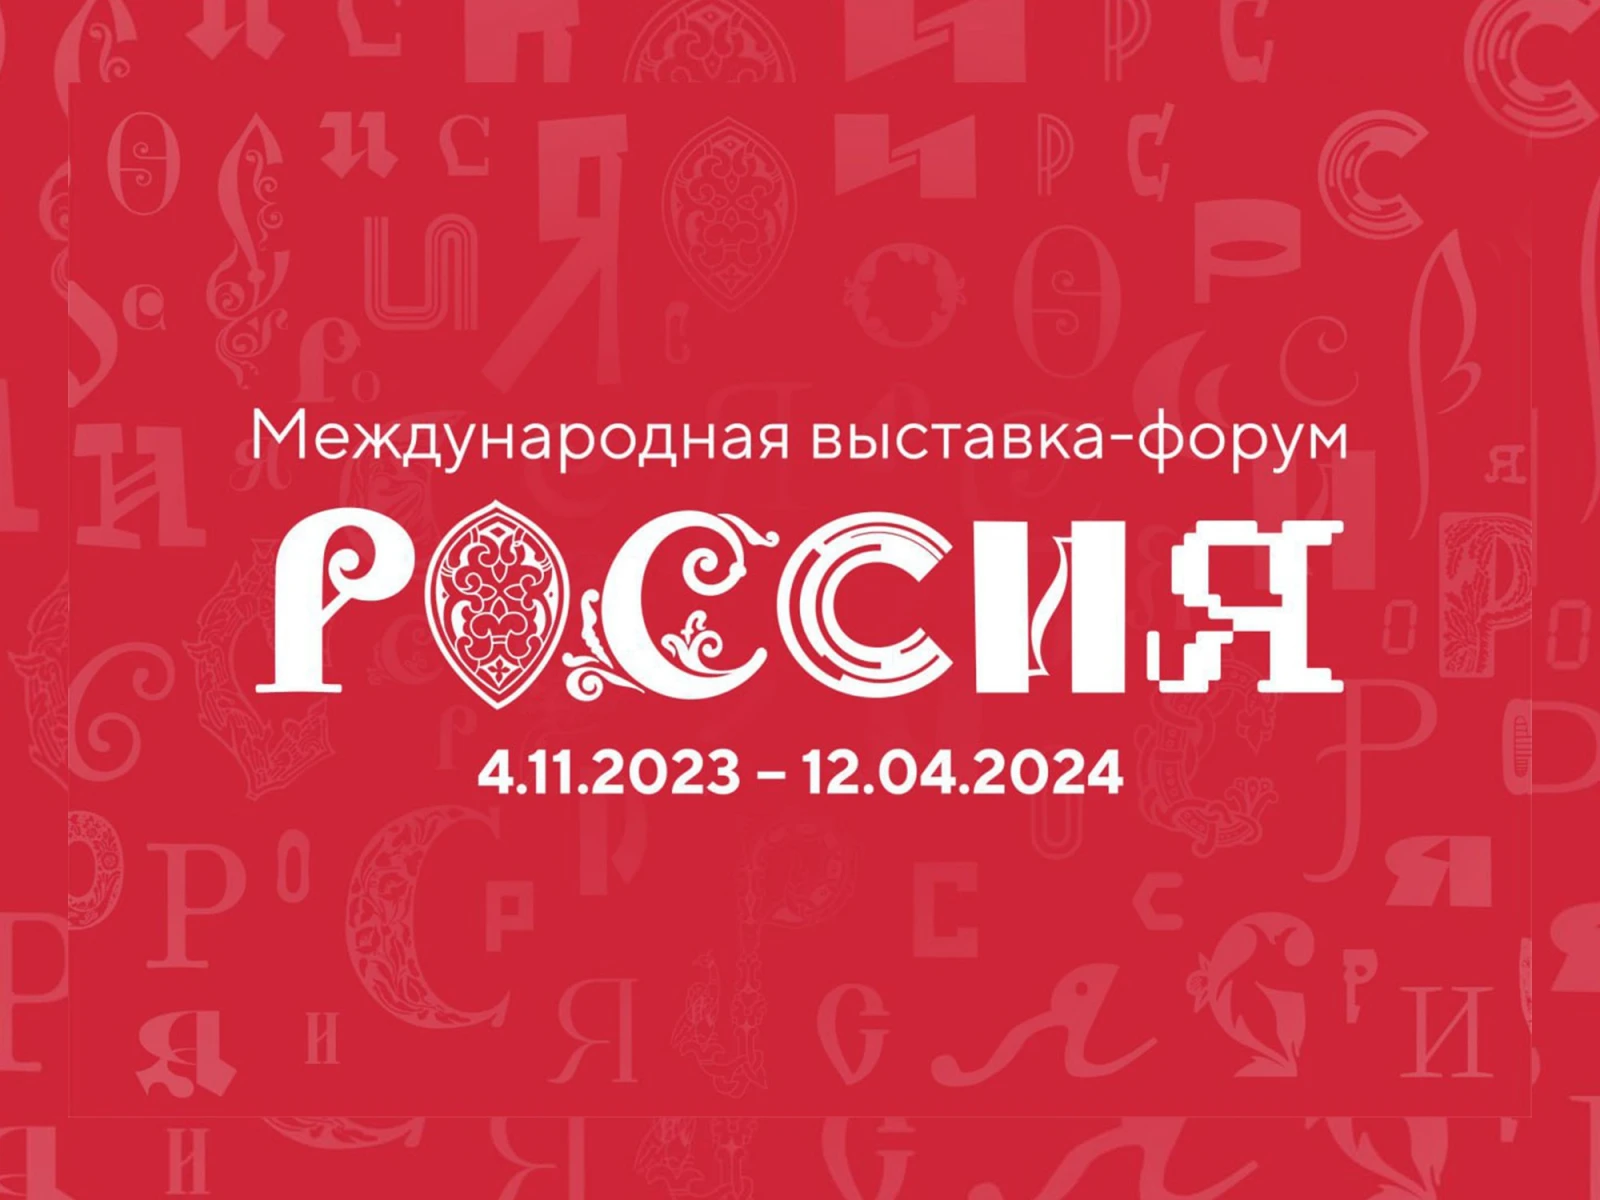 Международная выставка-форум Россия стартует ровно через 100 дней в  Москве | Новости russia.ru